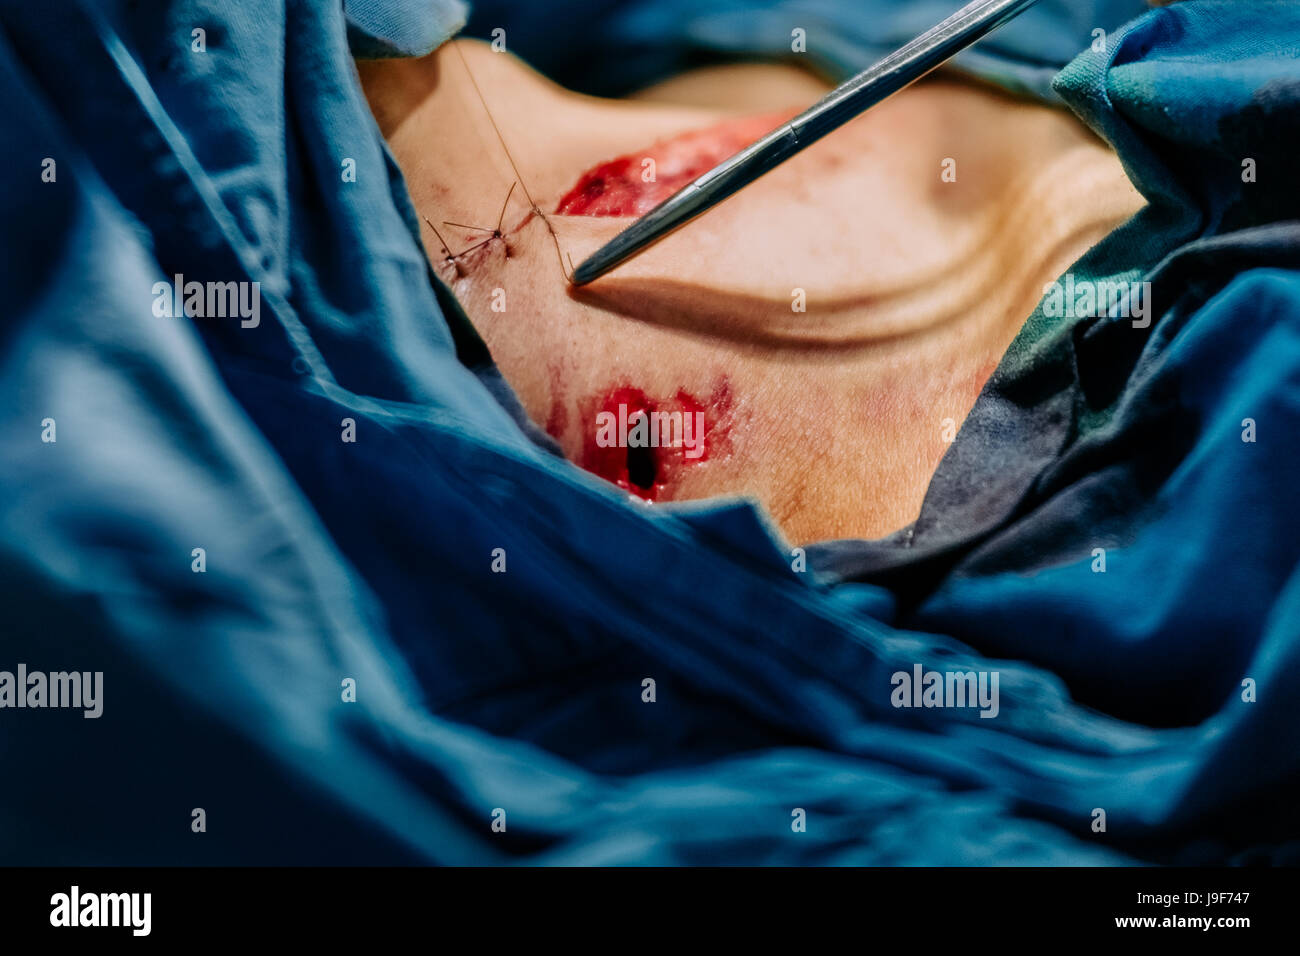 Le chirurgien suture la peau d'un jeune membre de gang, après avoir retiré  la balle d'une blessure abdominale, au cours de la chirurgie dans la salle  d'opération d'un hôpital public à San